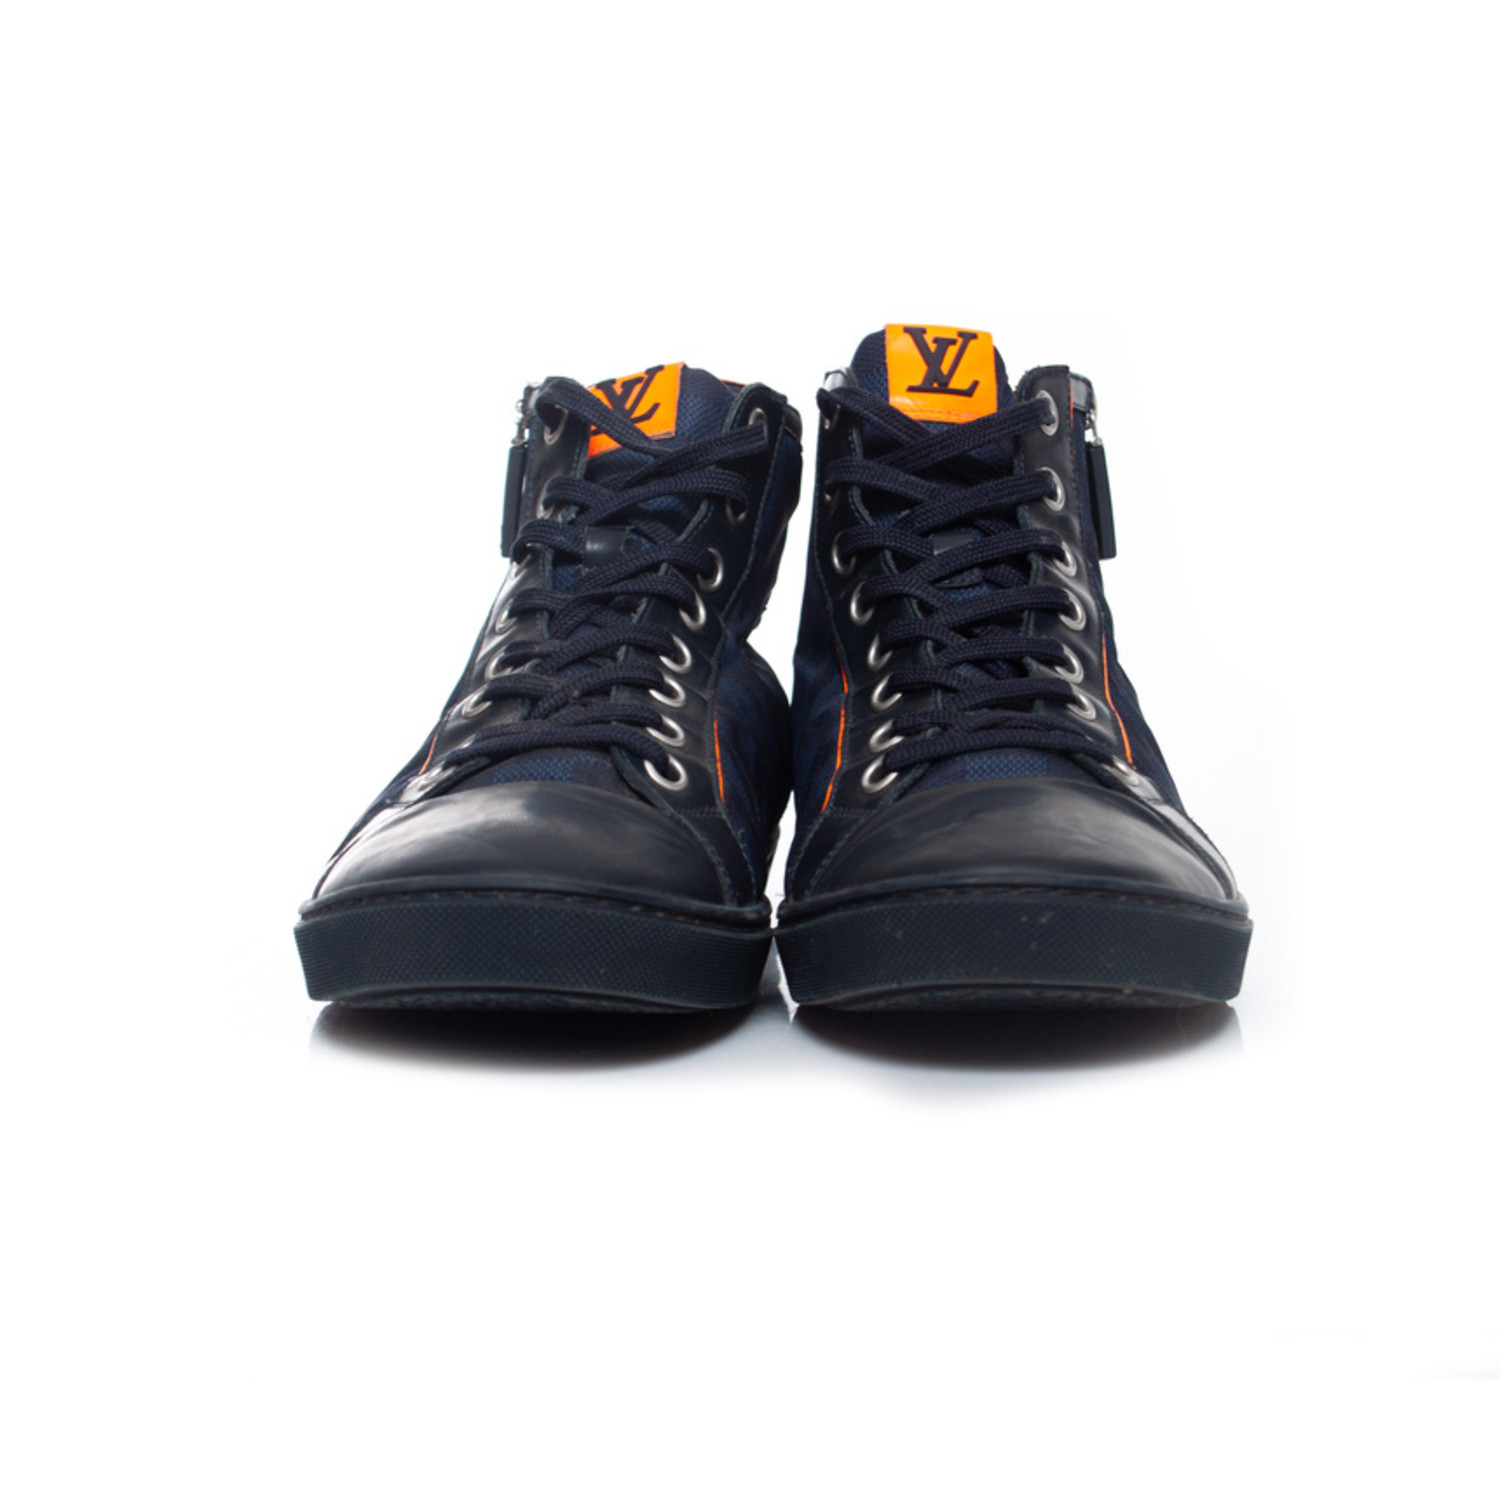 LOUIS VUITTON Damier Challenge Zip Up Sneakers 9 Blue 89740